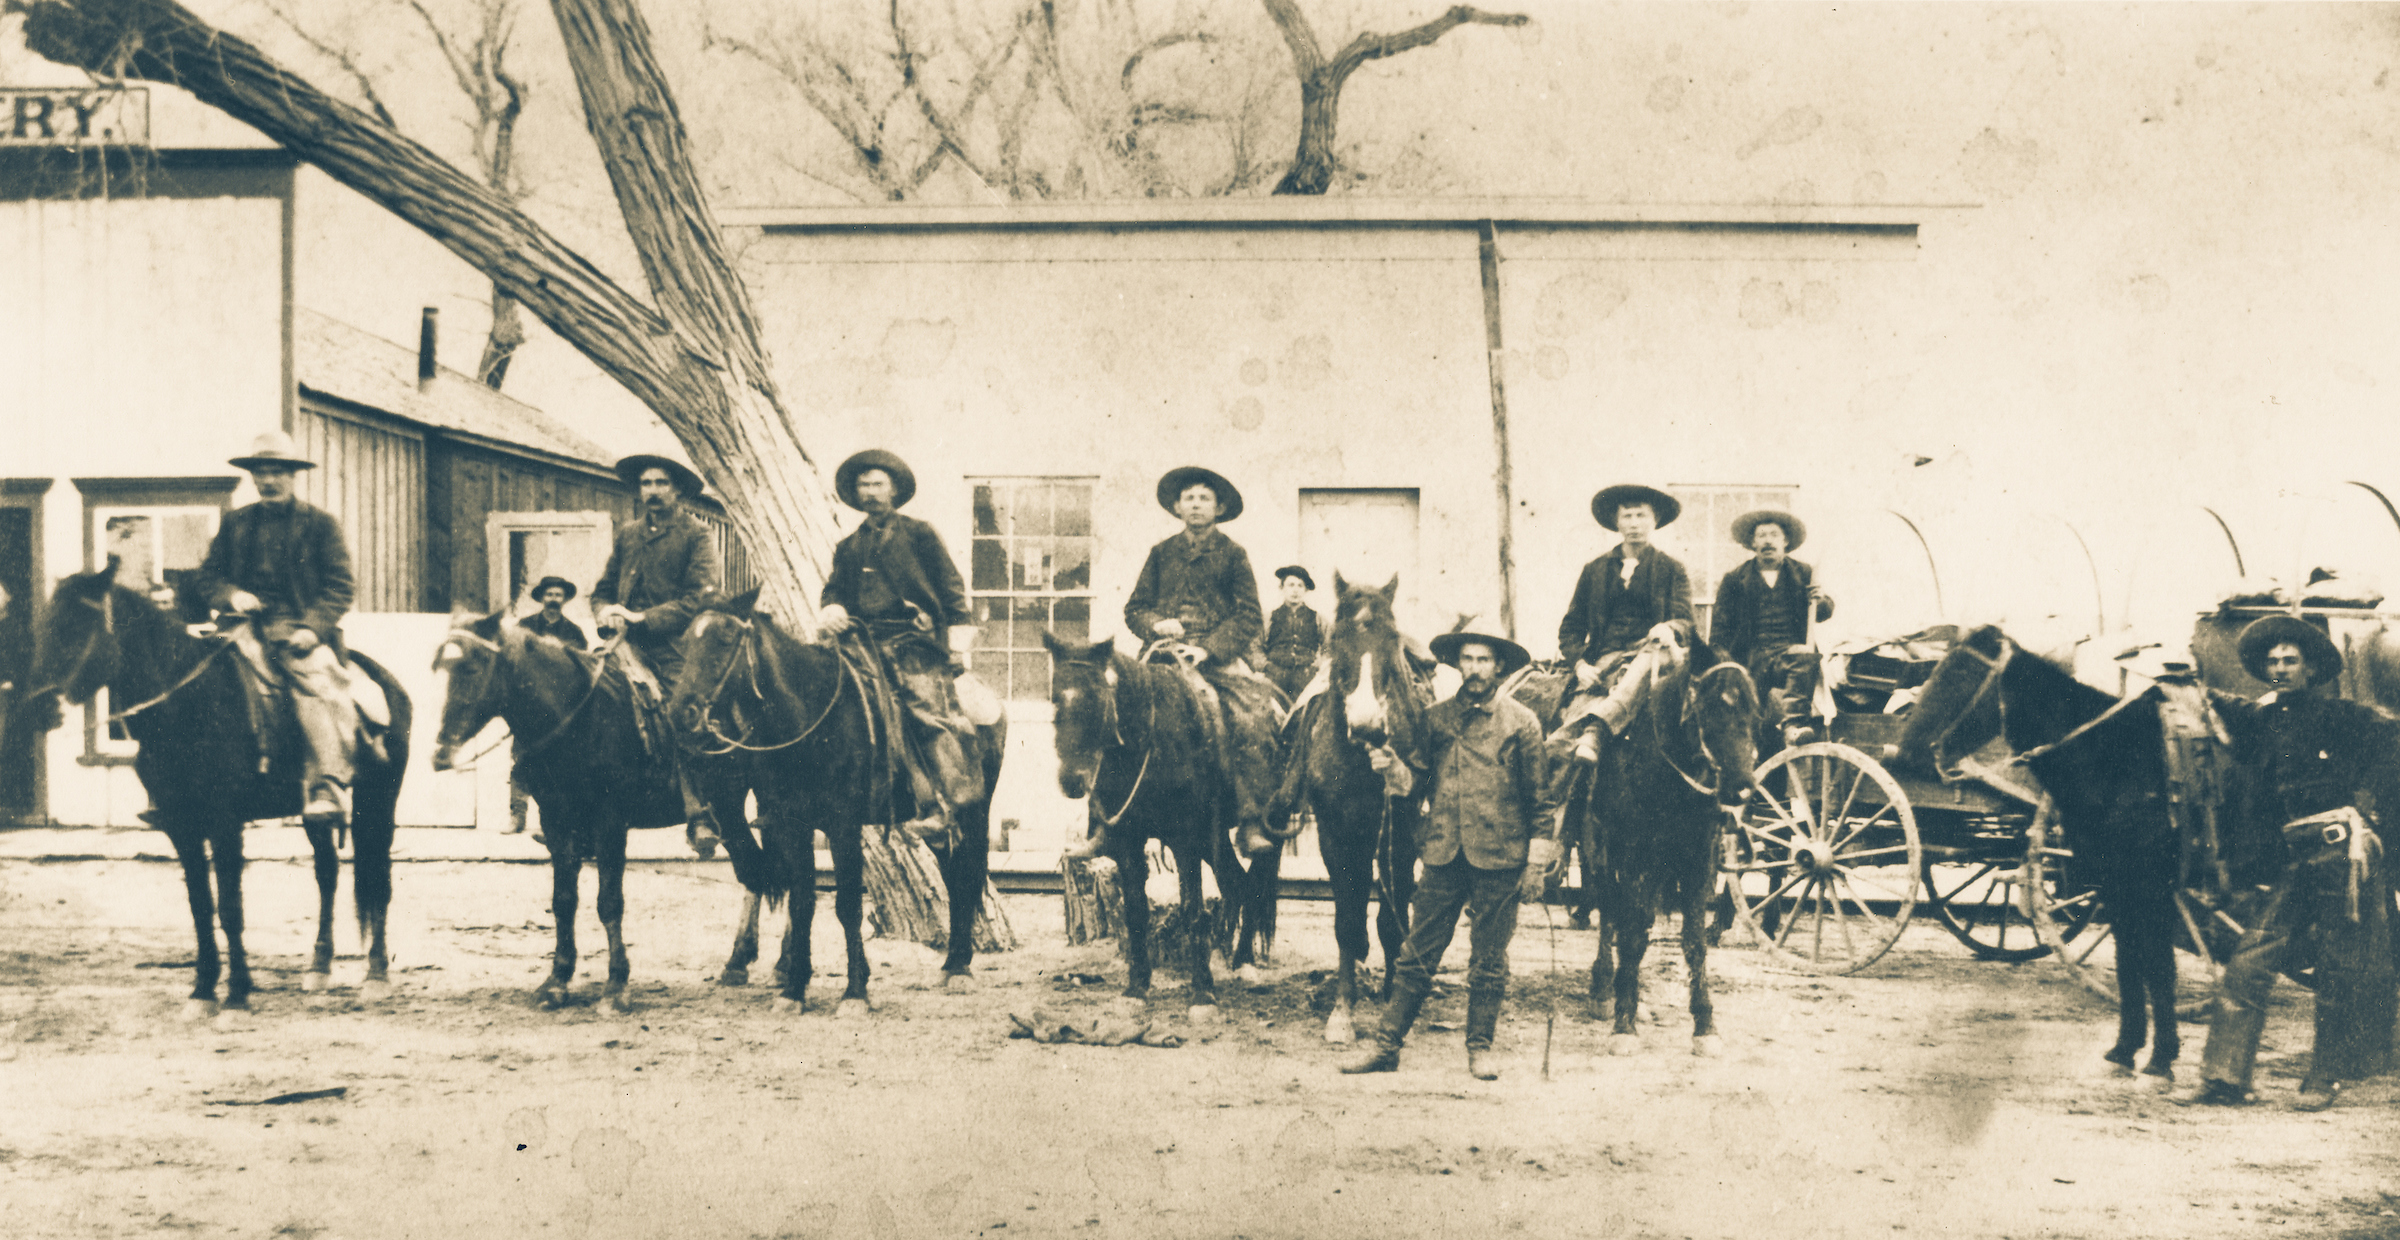 Hashknife cowboys Arizona 1880s